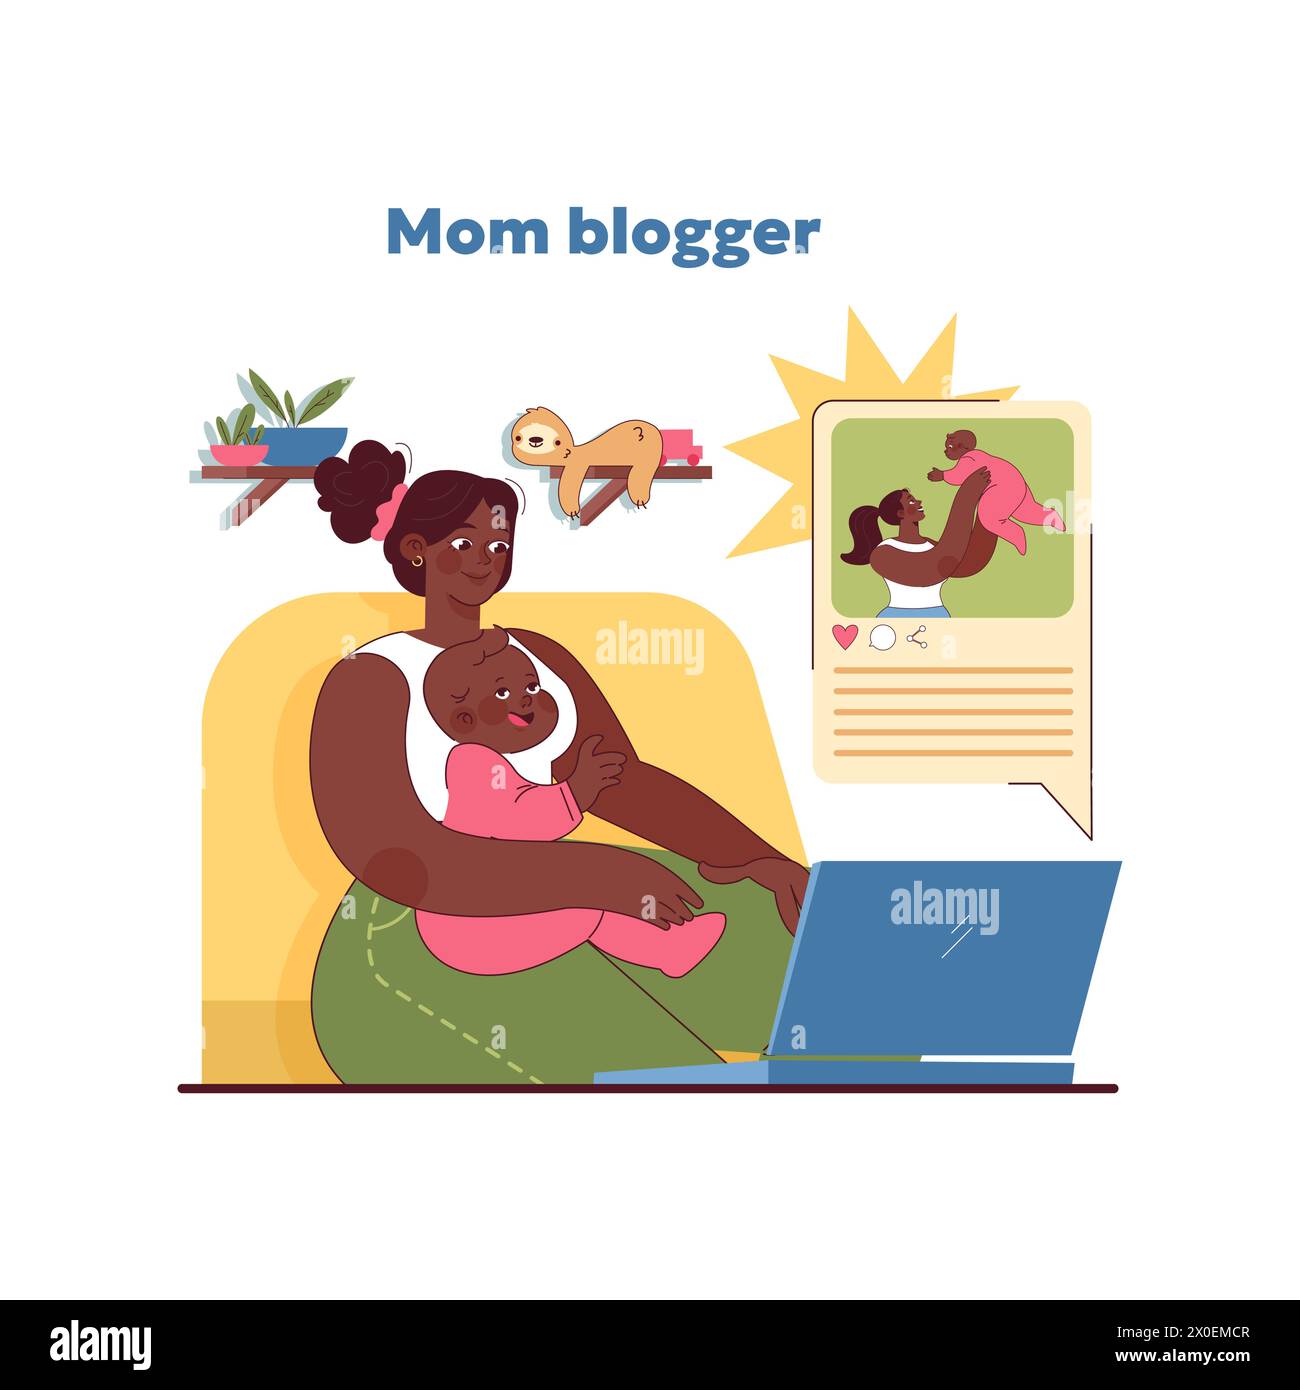 Mom Blogger Konzept. Die Mutterschaft zu pflegen ist im Bloggen tätig und teilt dem Online-Publikum herzliche Geschichten über die Mutterschaft. Vertrauliche und intime Einblicke in soziale Medien. Vektorabbildung Stock Vektor